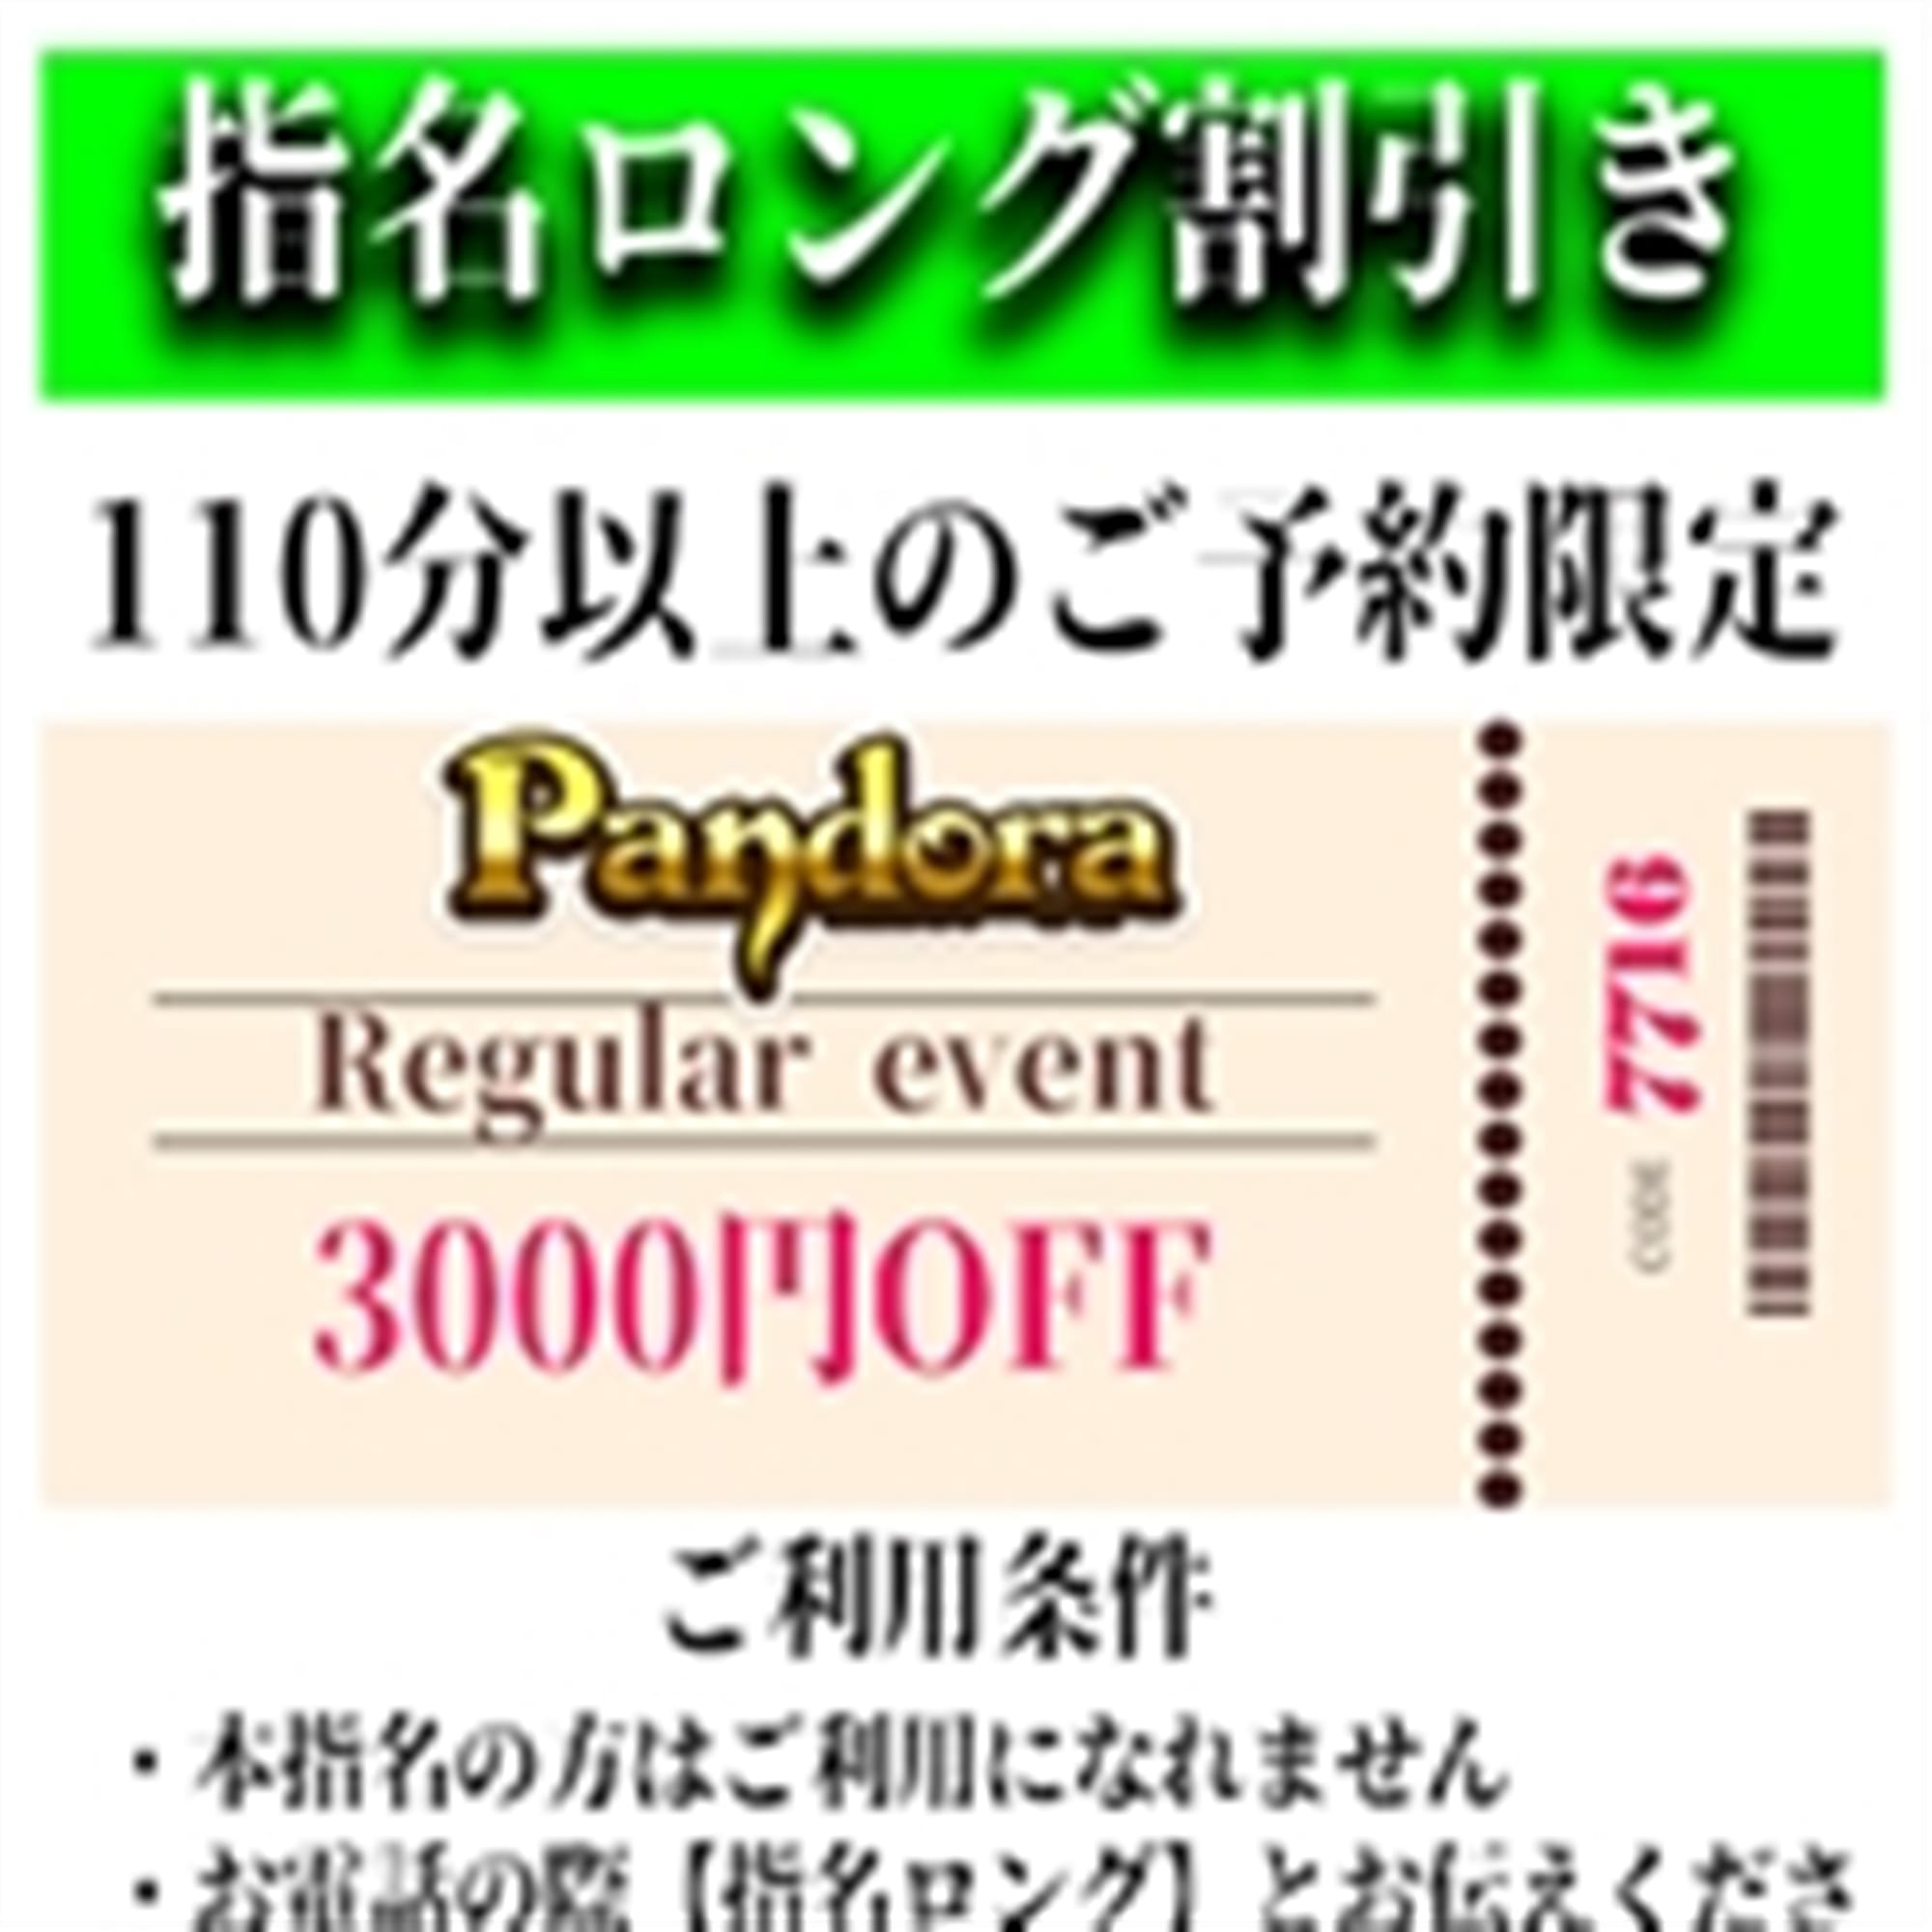 「ご指名のお客様も遊べるロングコース割引」04/26(金) 00:49 | Pandora(パンドラ)新潟のお得なニュース